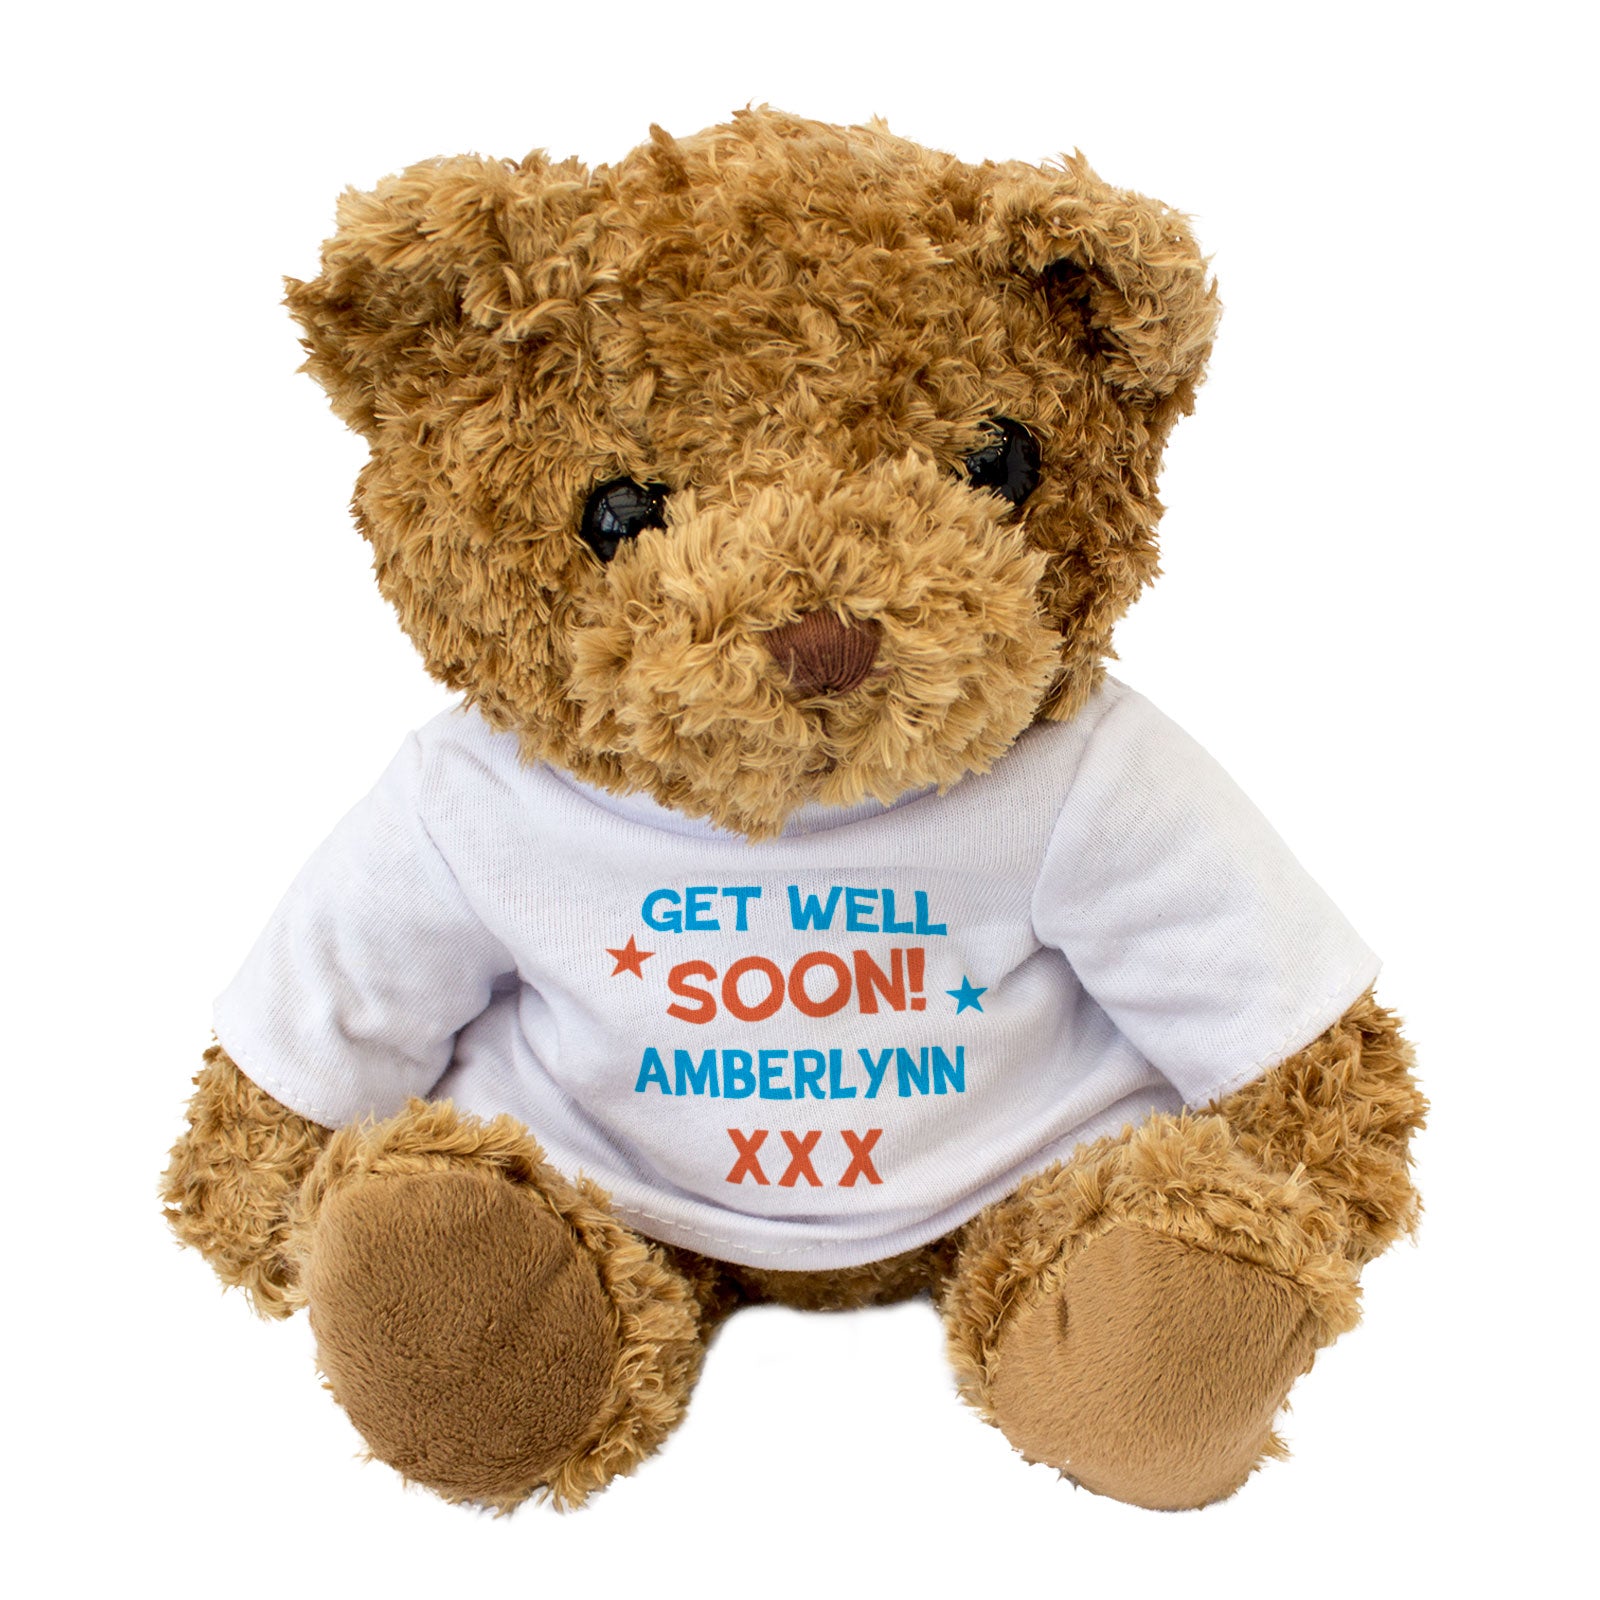 Get Well Soon Amberlynn - Teddy Bear